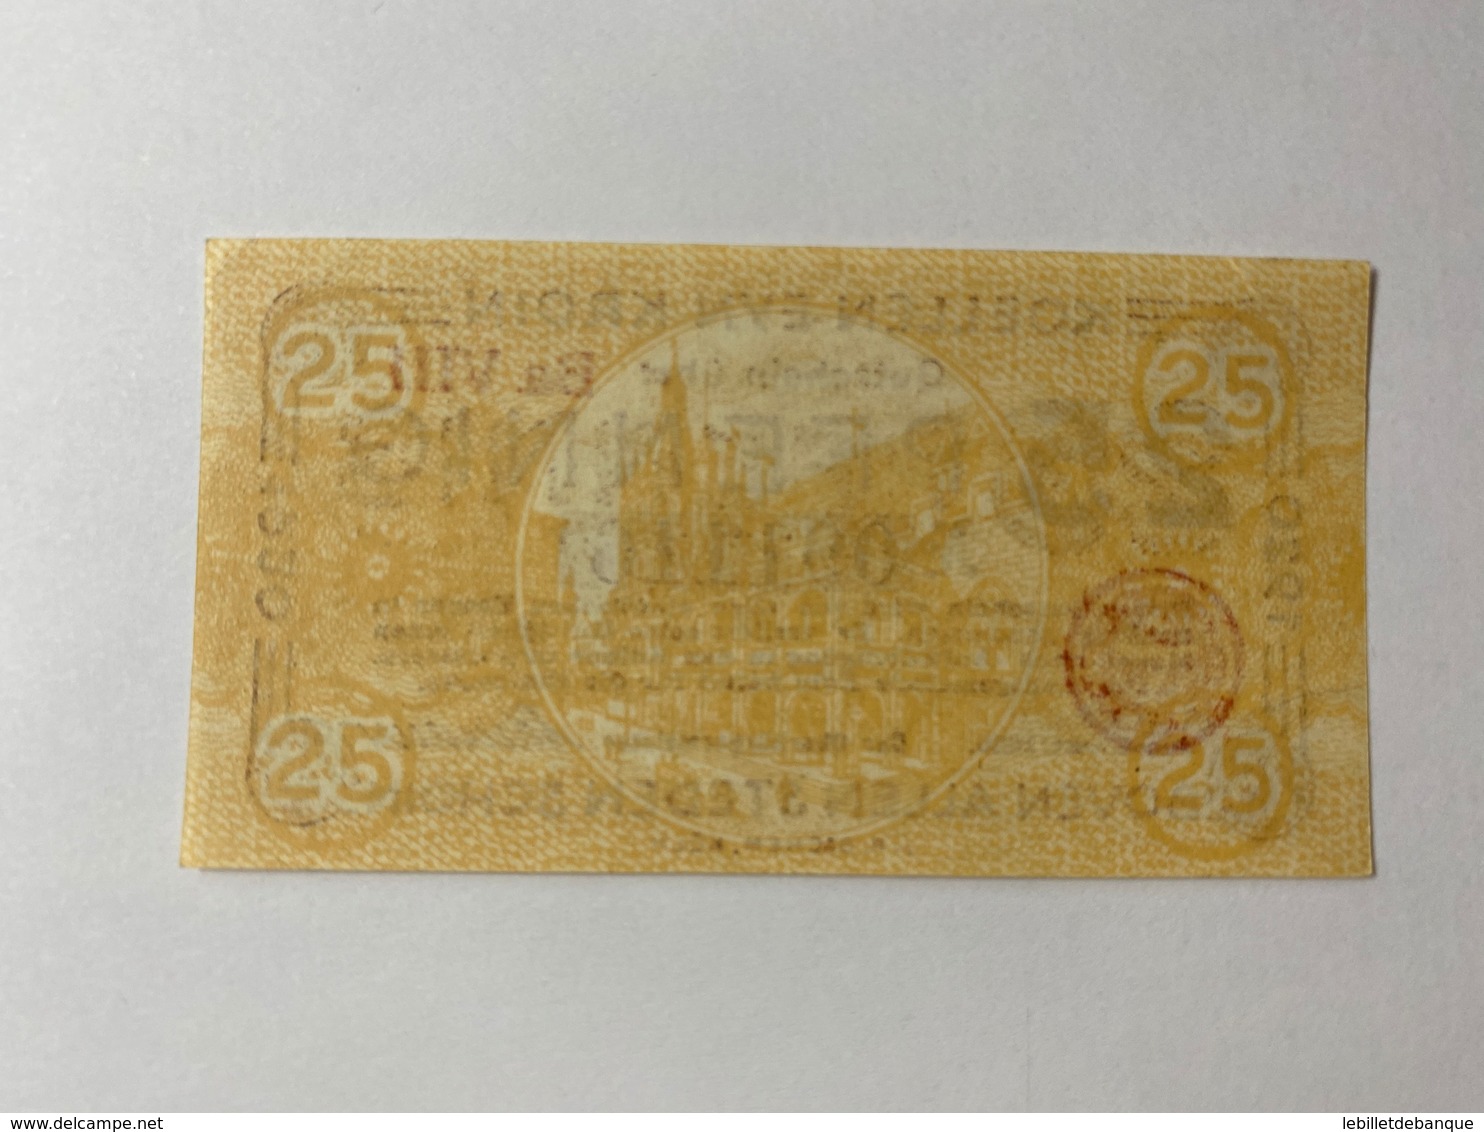 Allemagne Notgeld Koln 25 Pfennig - Collections